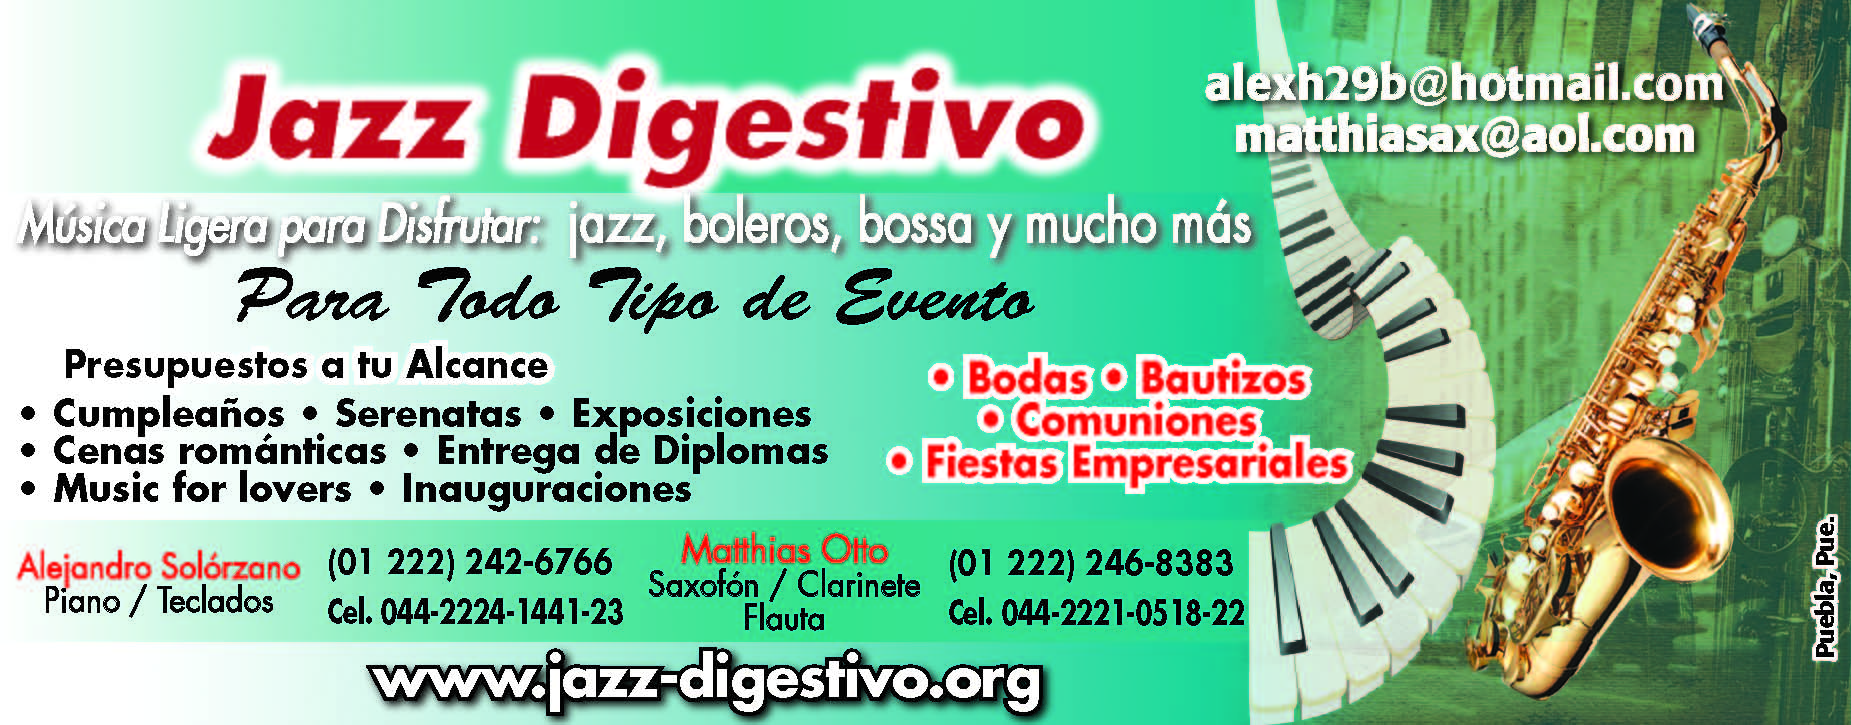 Jazz Digestivo Publicidad -- 
www.jazz-digestivo.org